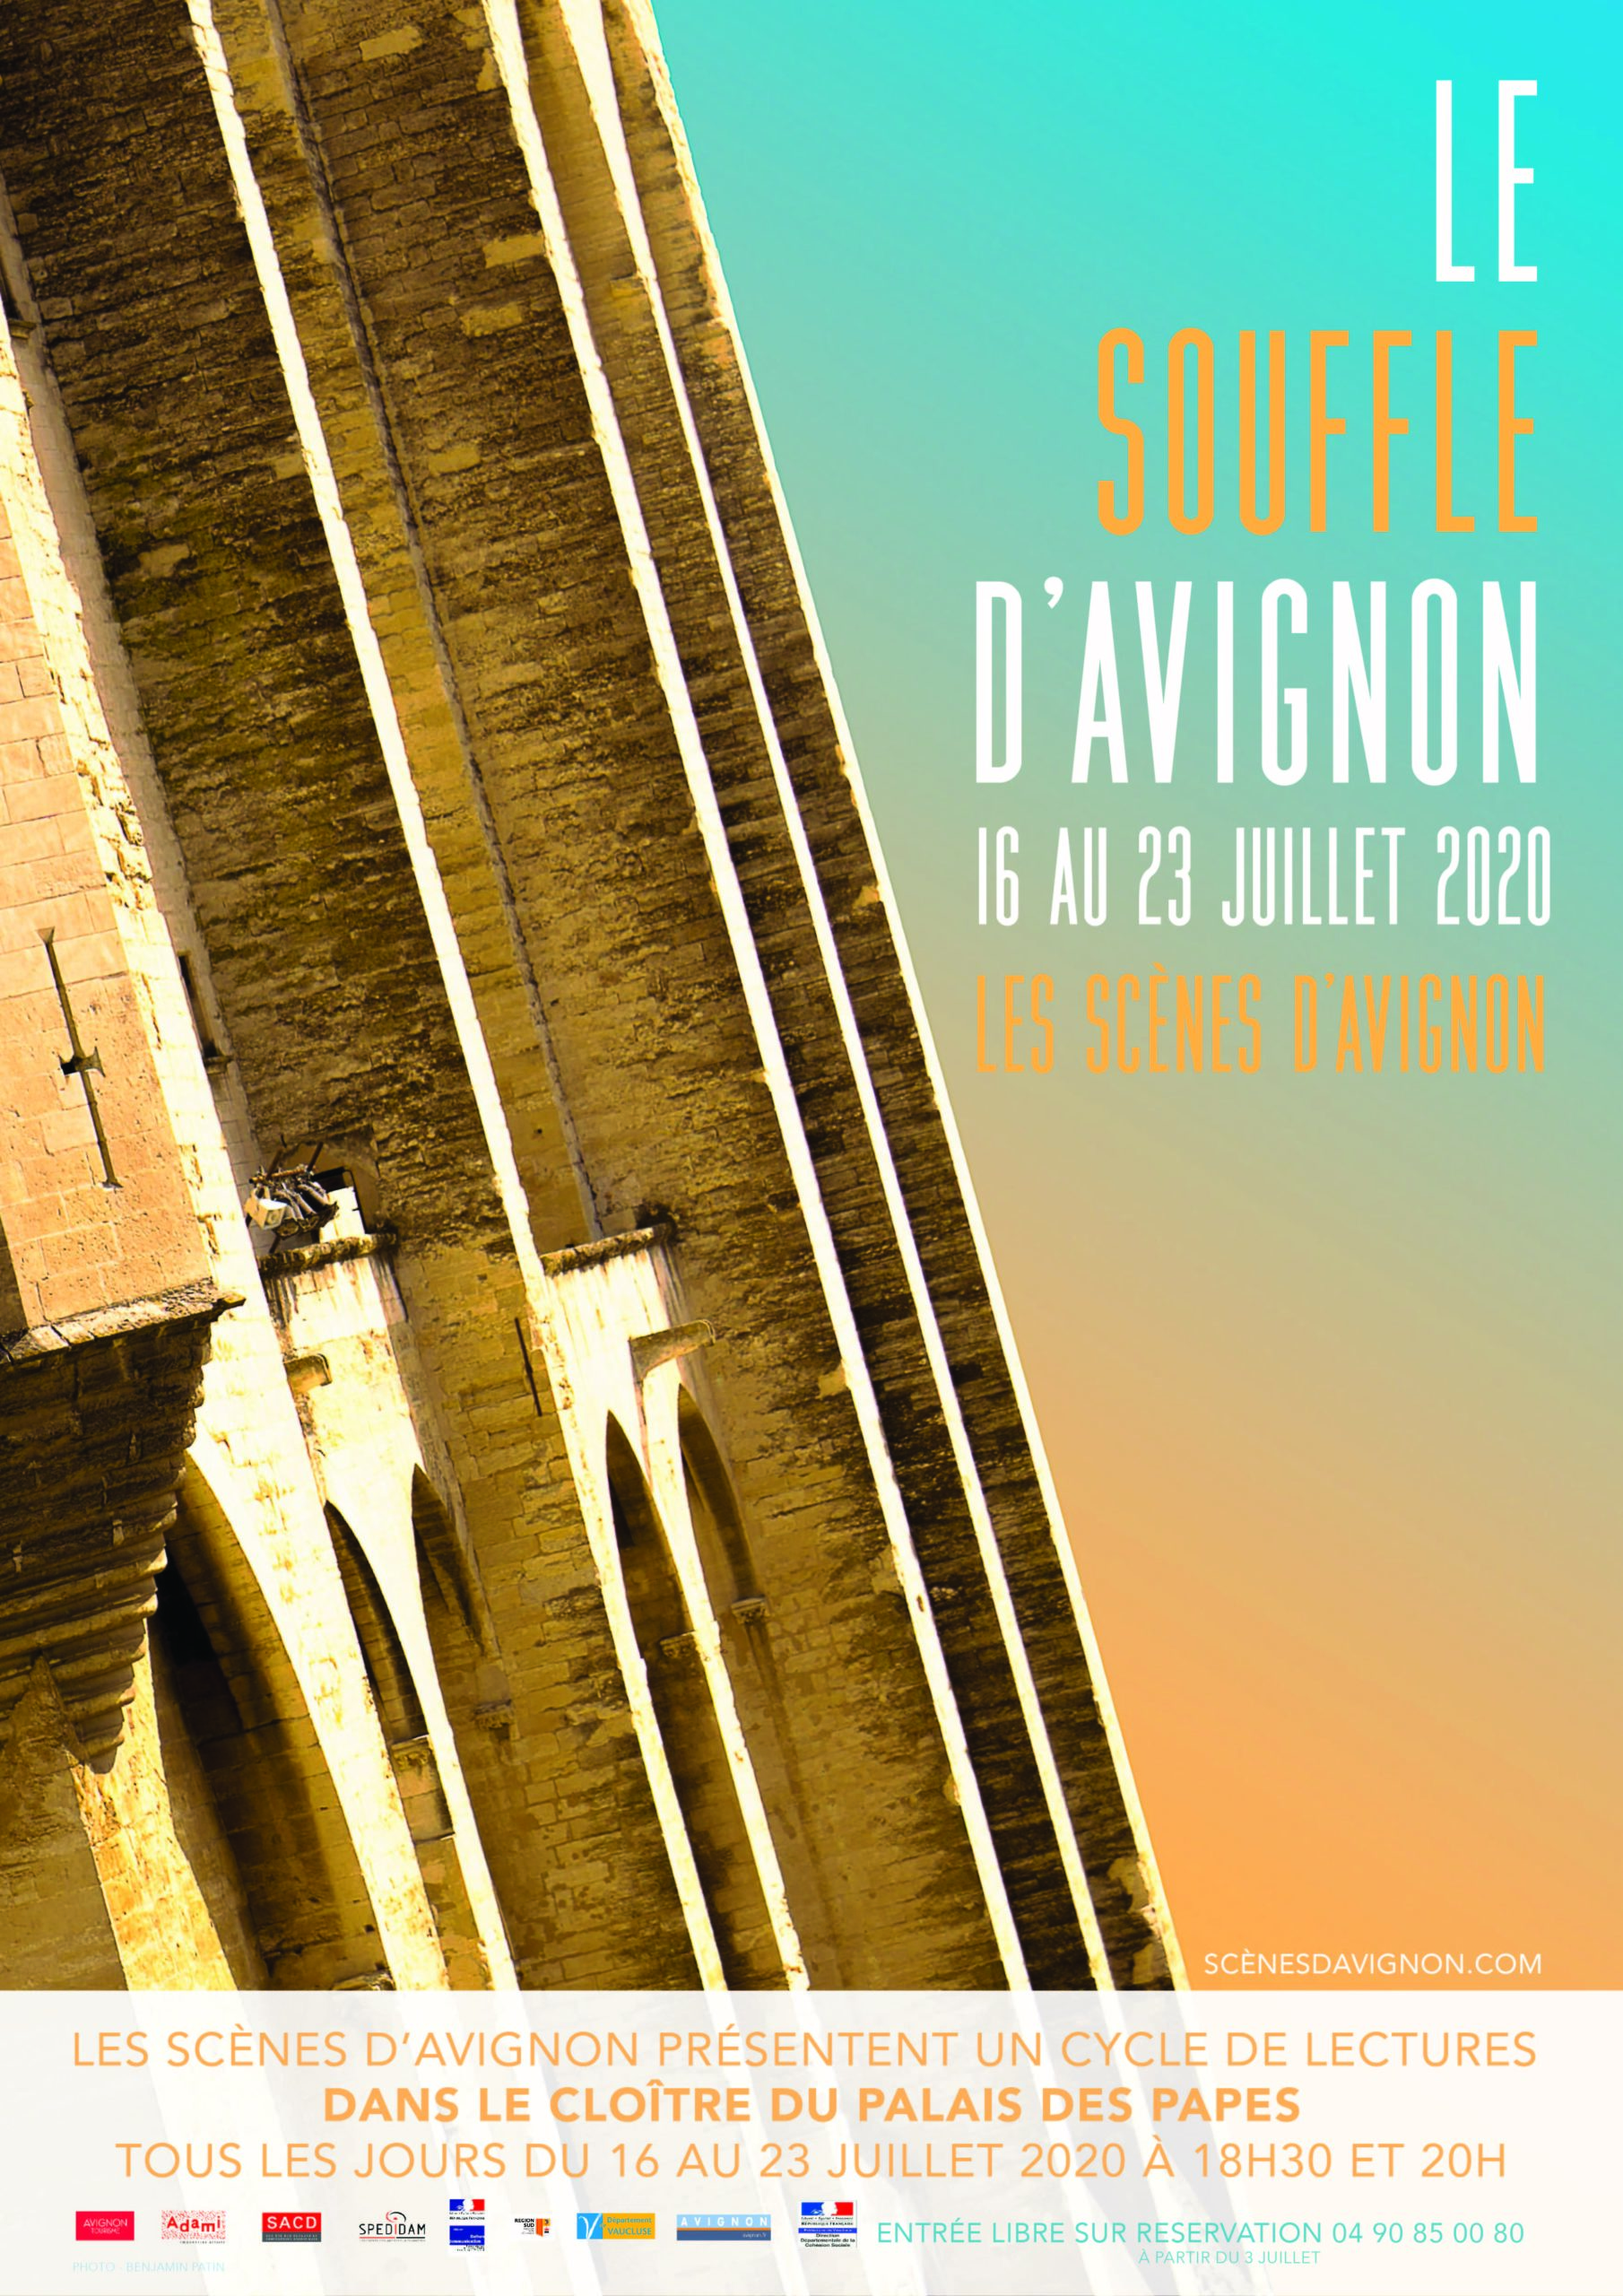 Festival : "Le souffle d'Avignon" au Cloître Palais des Papes du 16 au 23 Juillet 2020